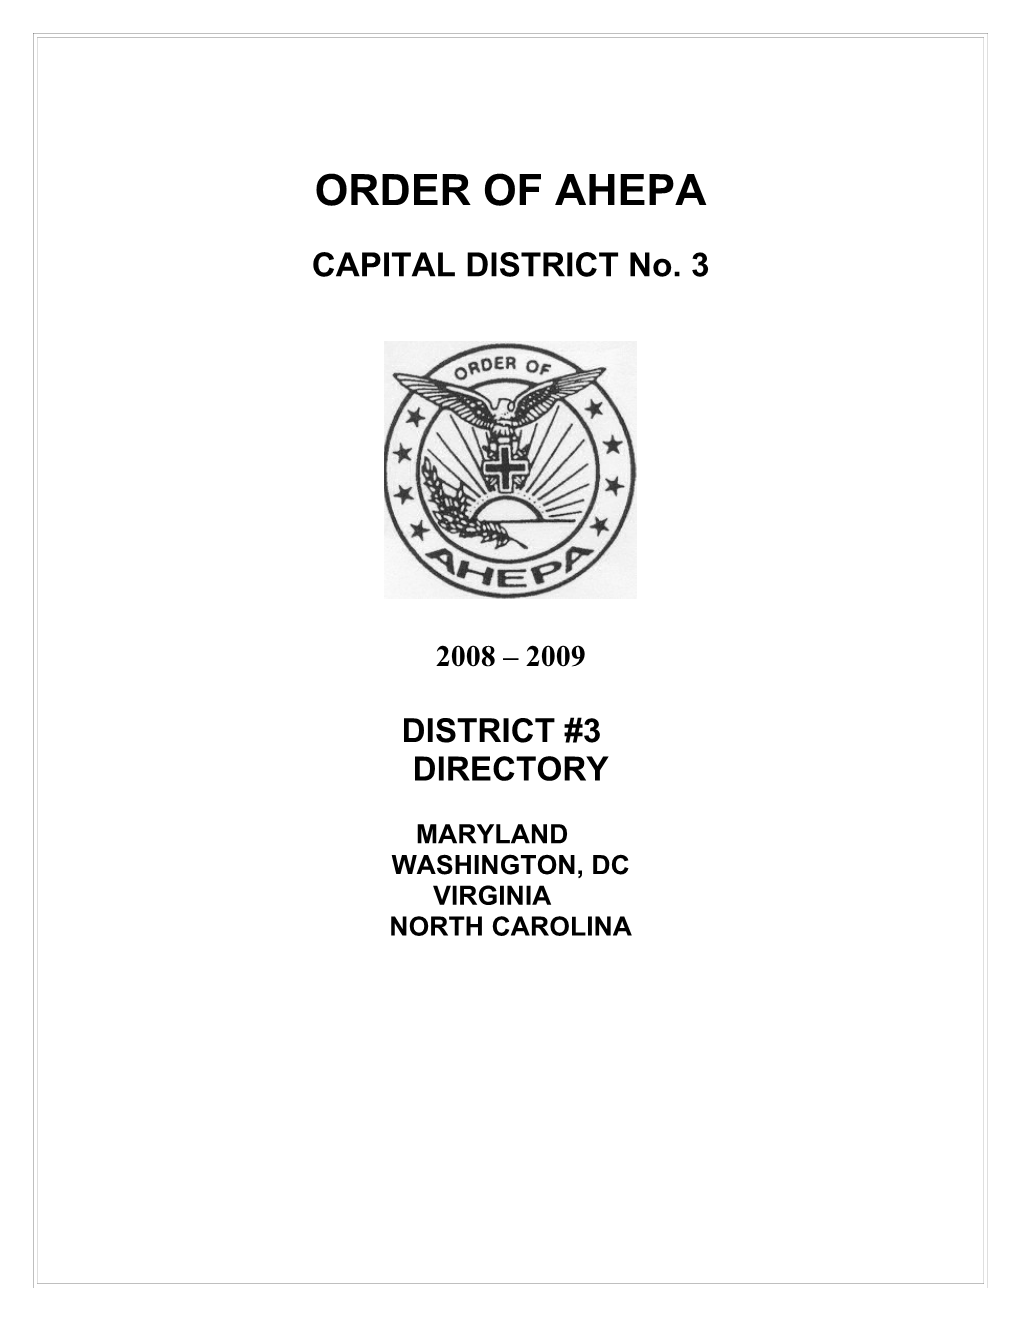 Order of Ahepa